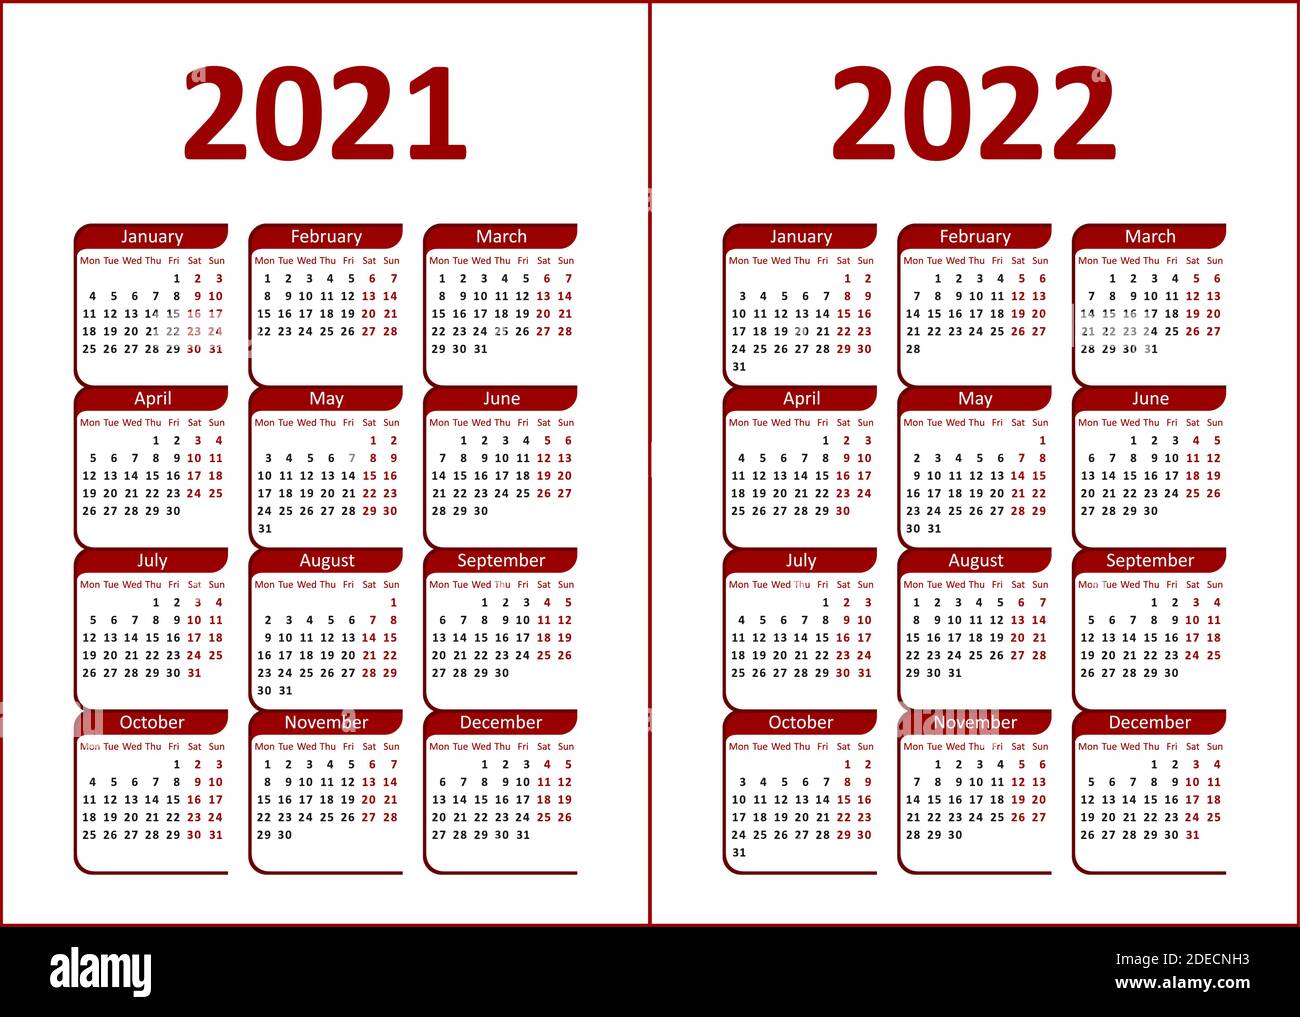 Calendario per il 2021, 2022. Lettere e cifre rosse e nere su sfondo bianco. La settimana inizia il lunedì. Illustrazione Vettoriale